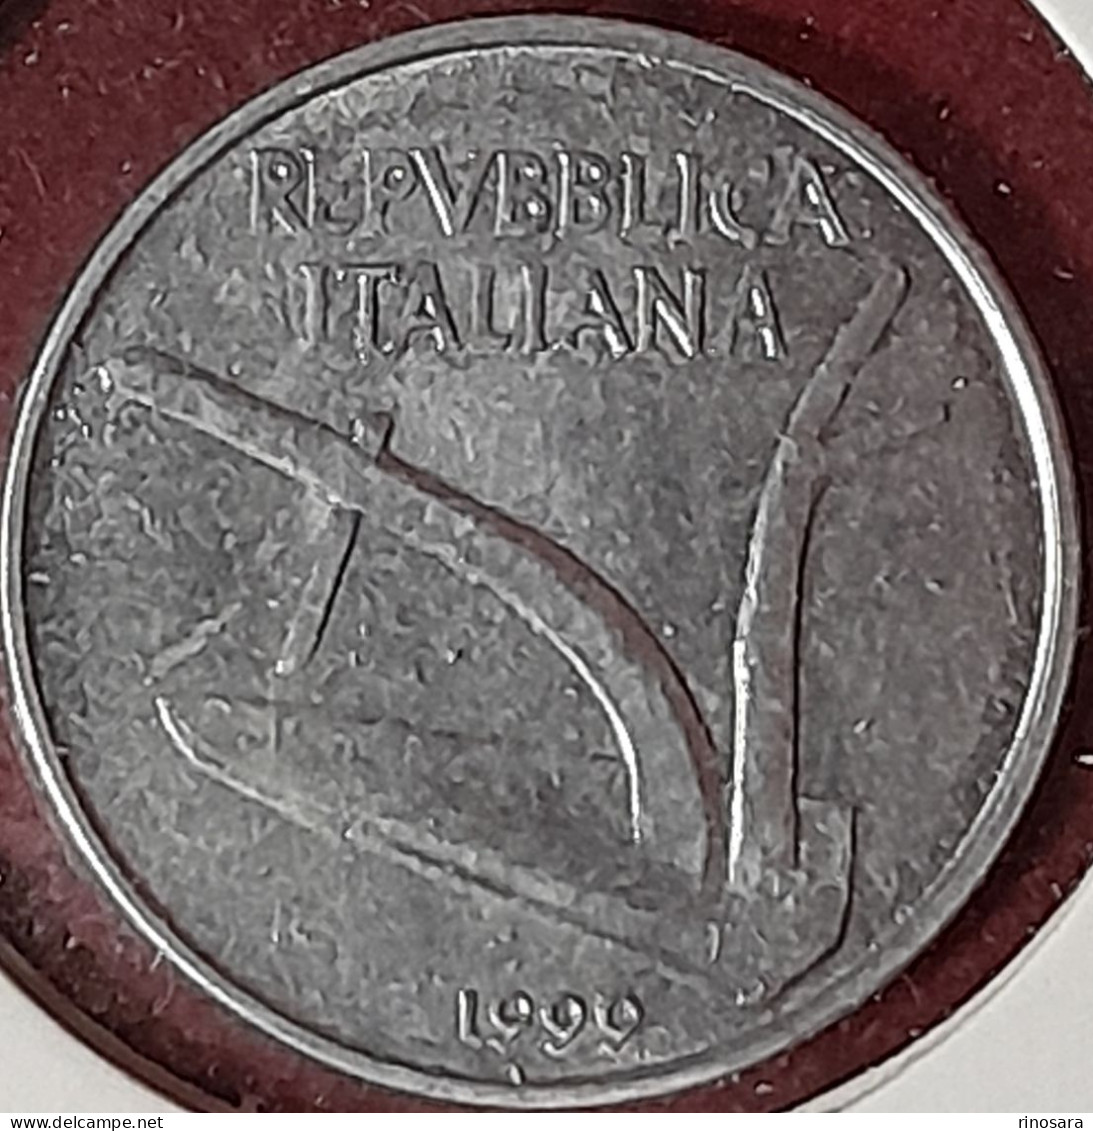 Errore Di Conio 10 Lire 1999 Repubblica Italiana - 10 Lire